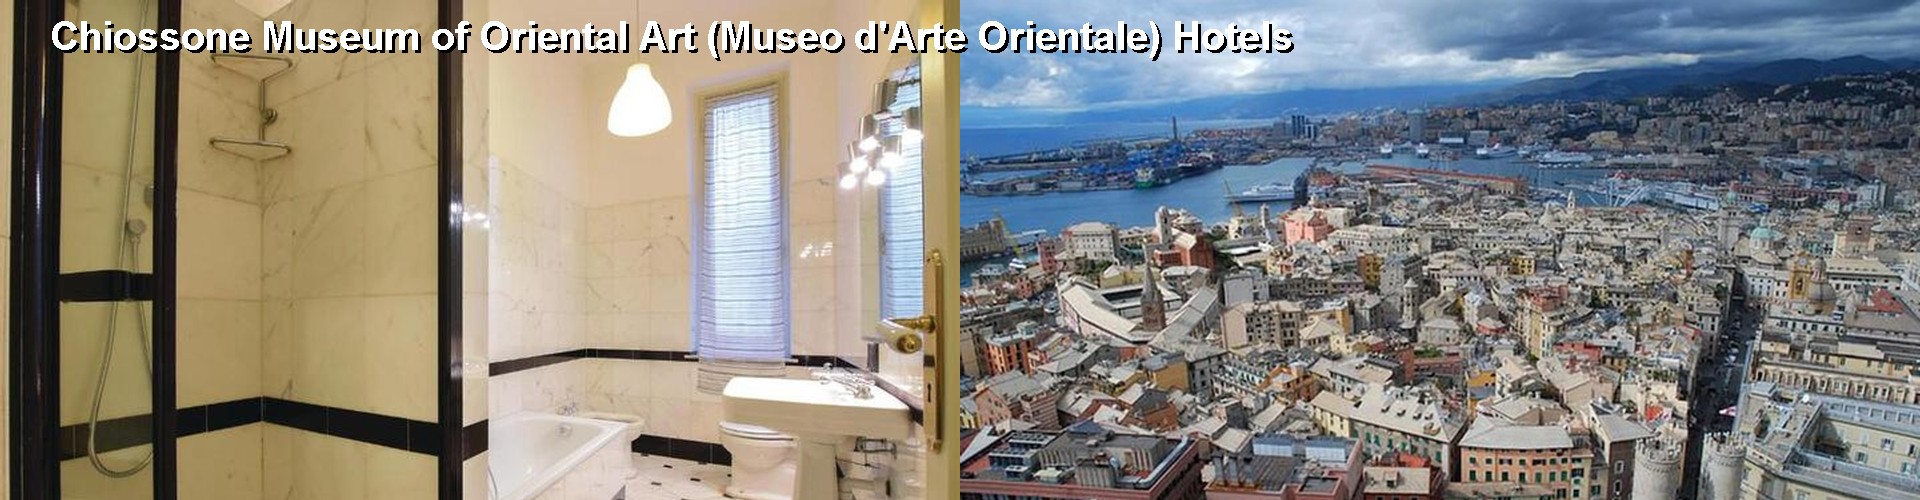 5 Best Hotels near Chiossone Museum of Oriental Art (Museo d'Arte Orientale)